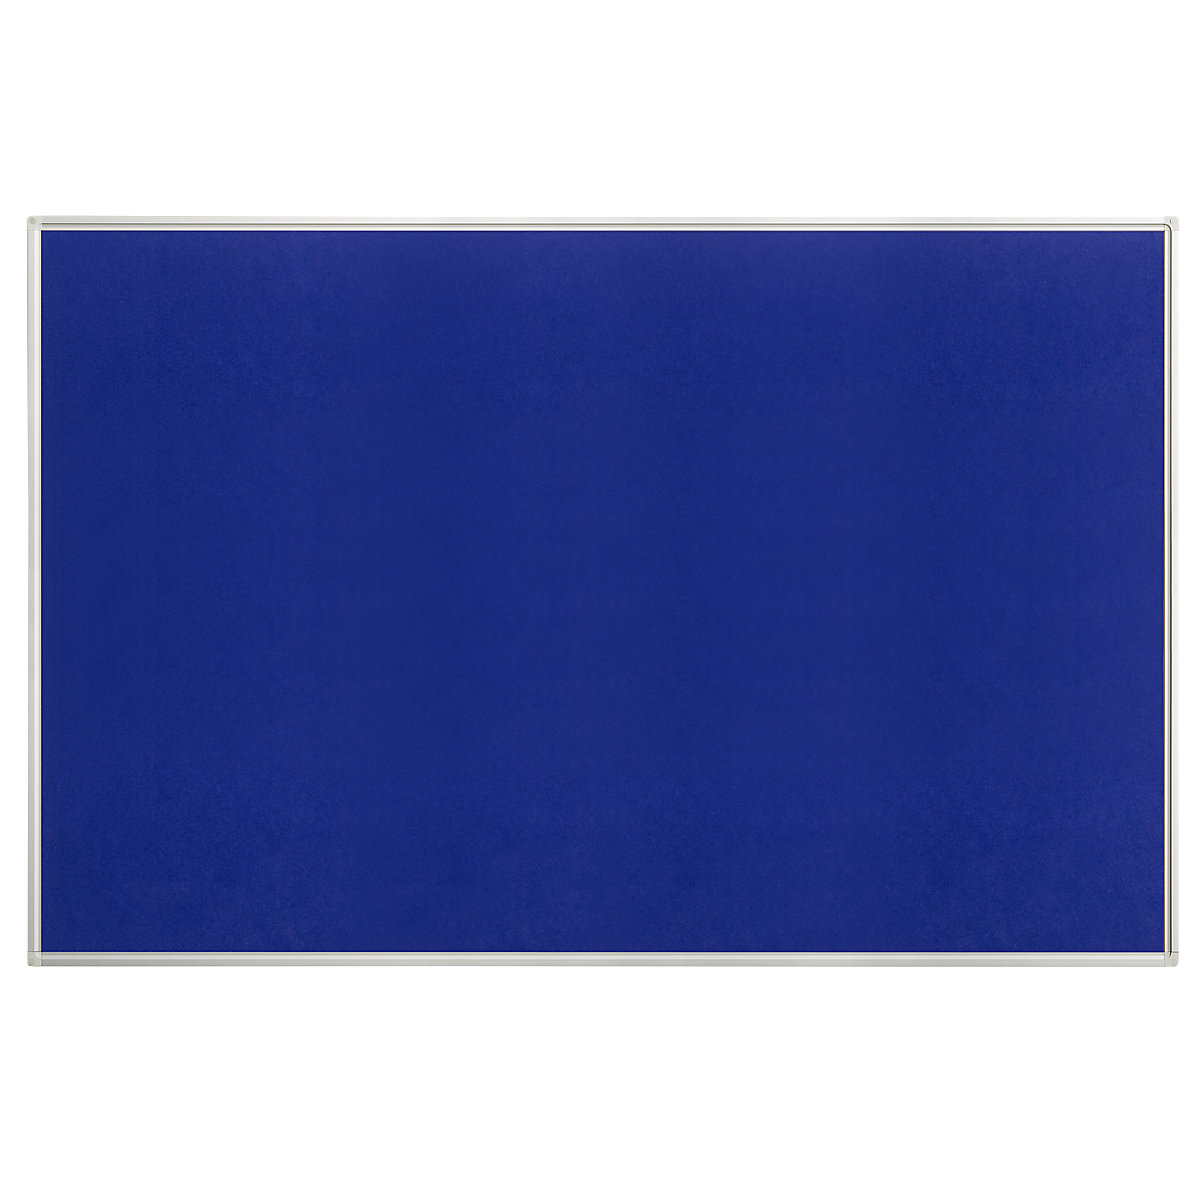 Tableau pour épingles, feutre, bleu, l x h 1500 x 1000 mm-4